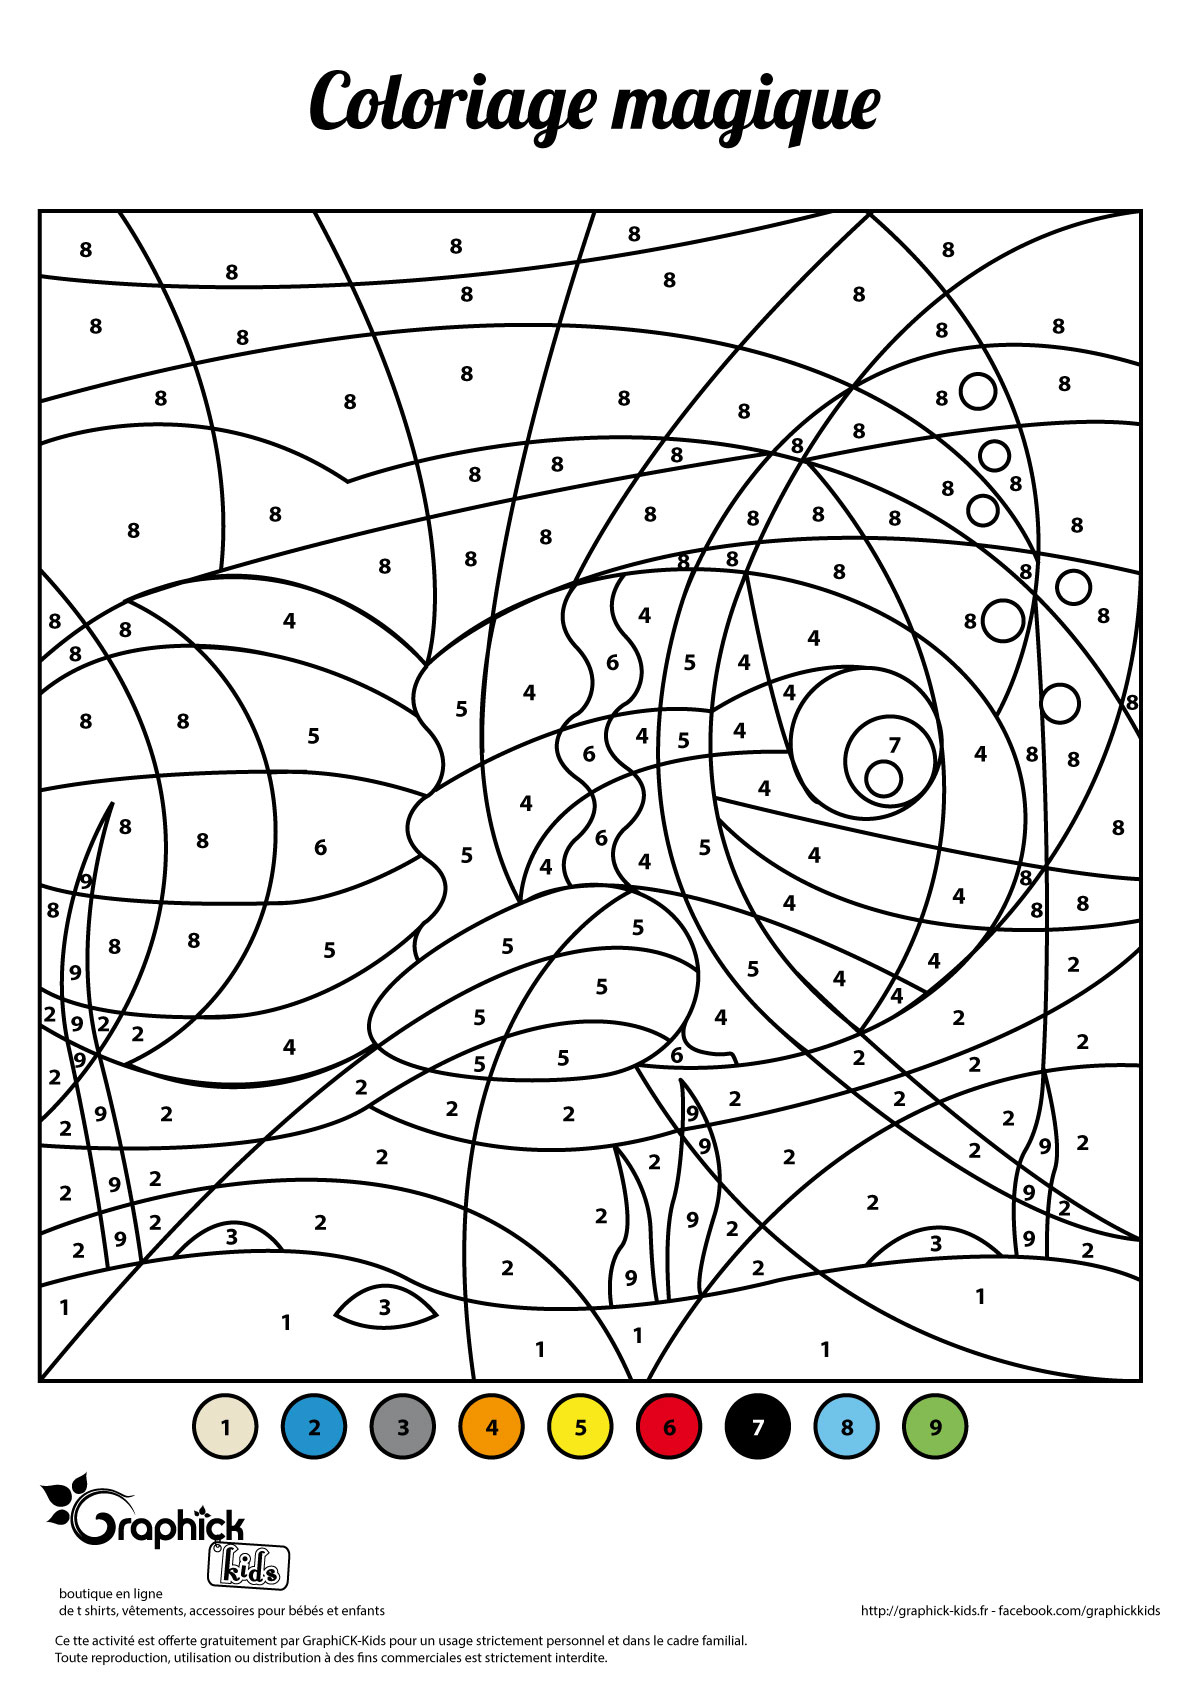 Coloriages Par Numéros - Graphick-Kids dedans Coloriage Magique Pour Enfant 